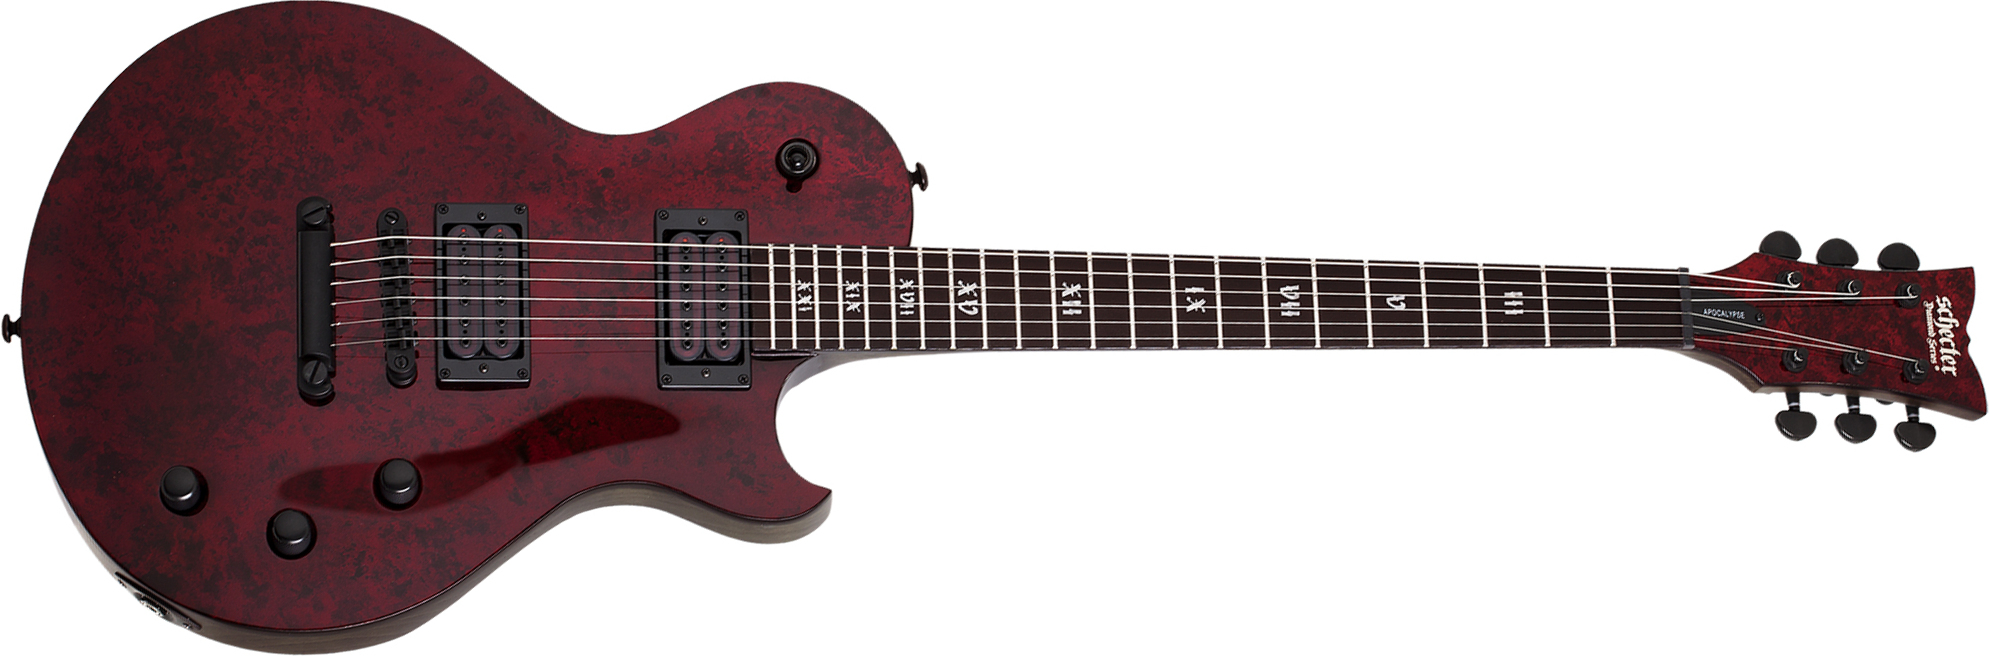 Schecter Solo-ii Apocalypse 2h Ht Eb - Red Reign - Enkel gesneden elektrische gitaar - Main picture